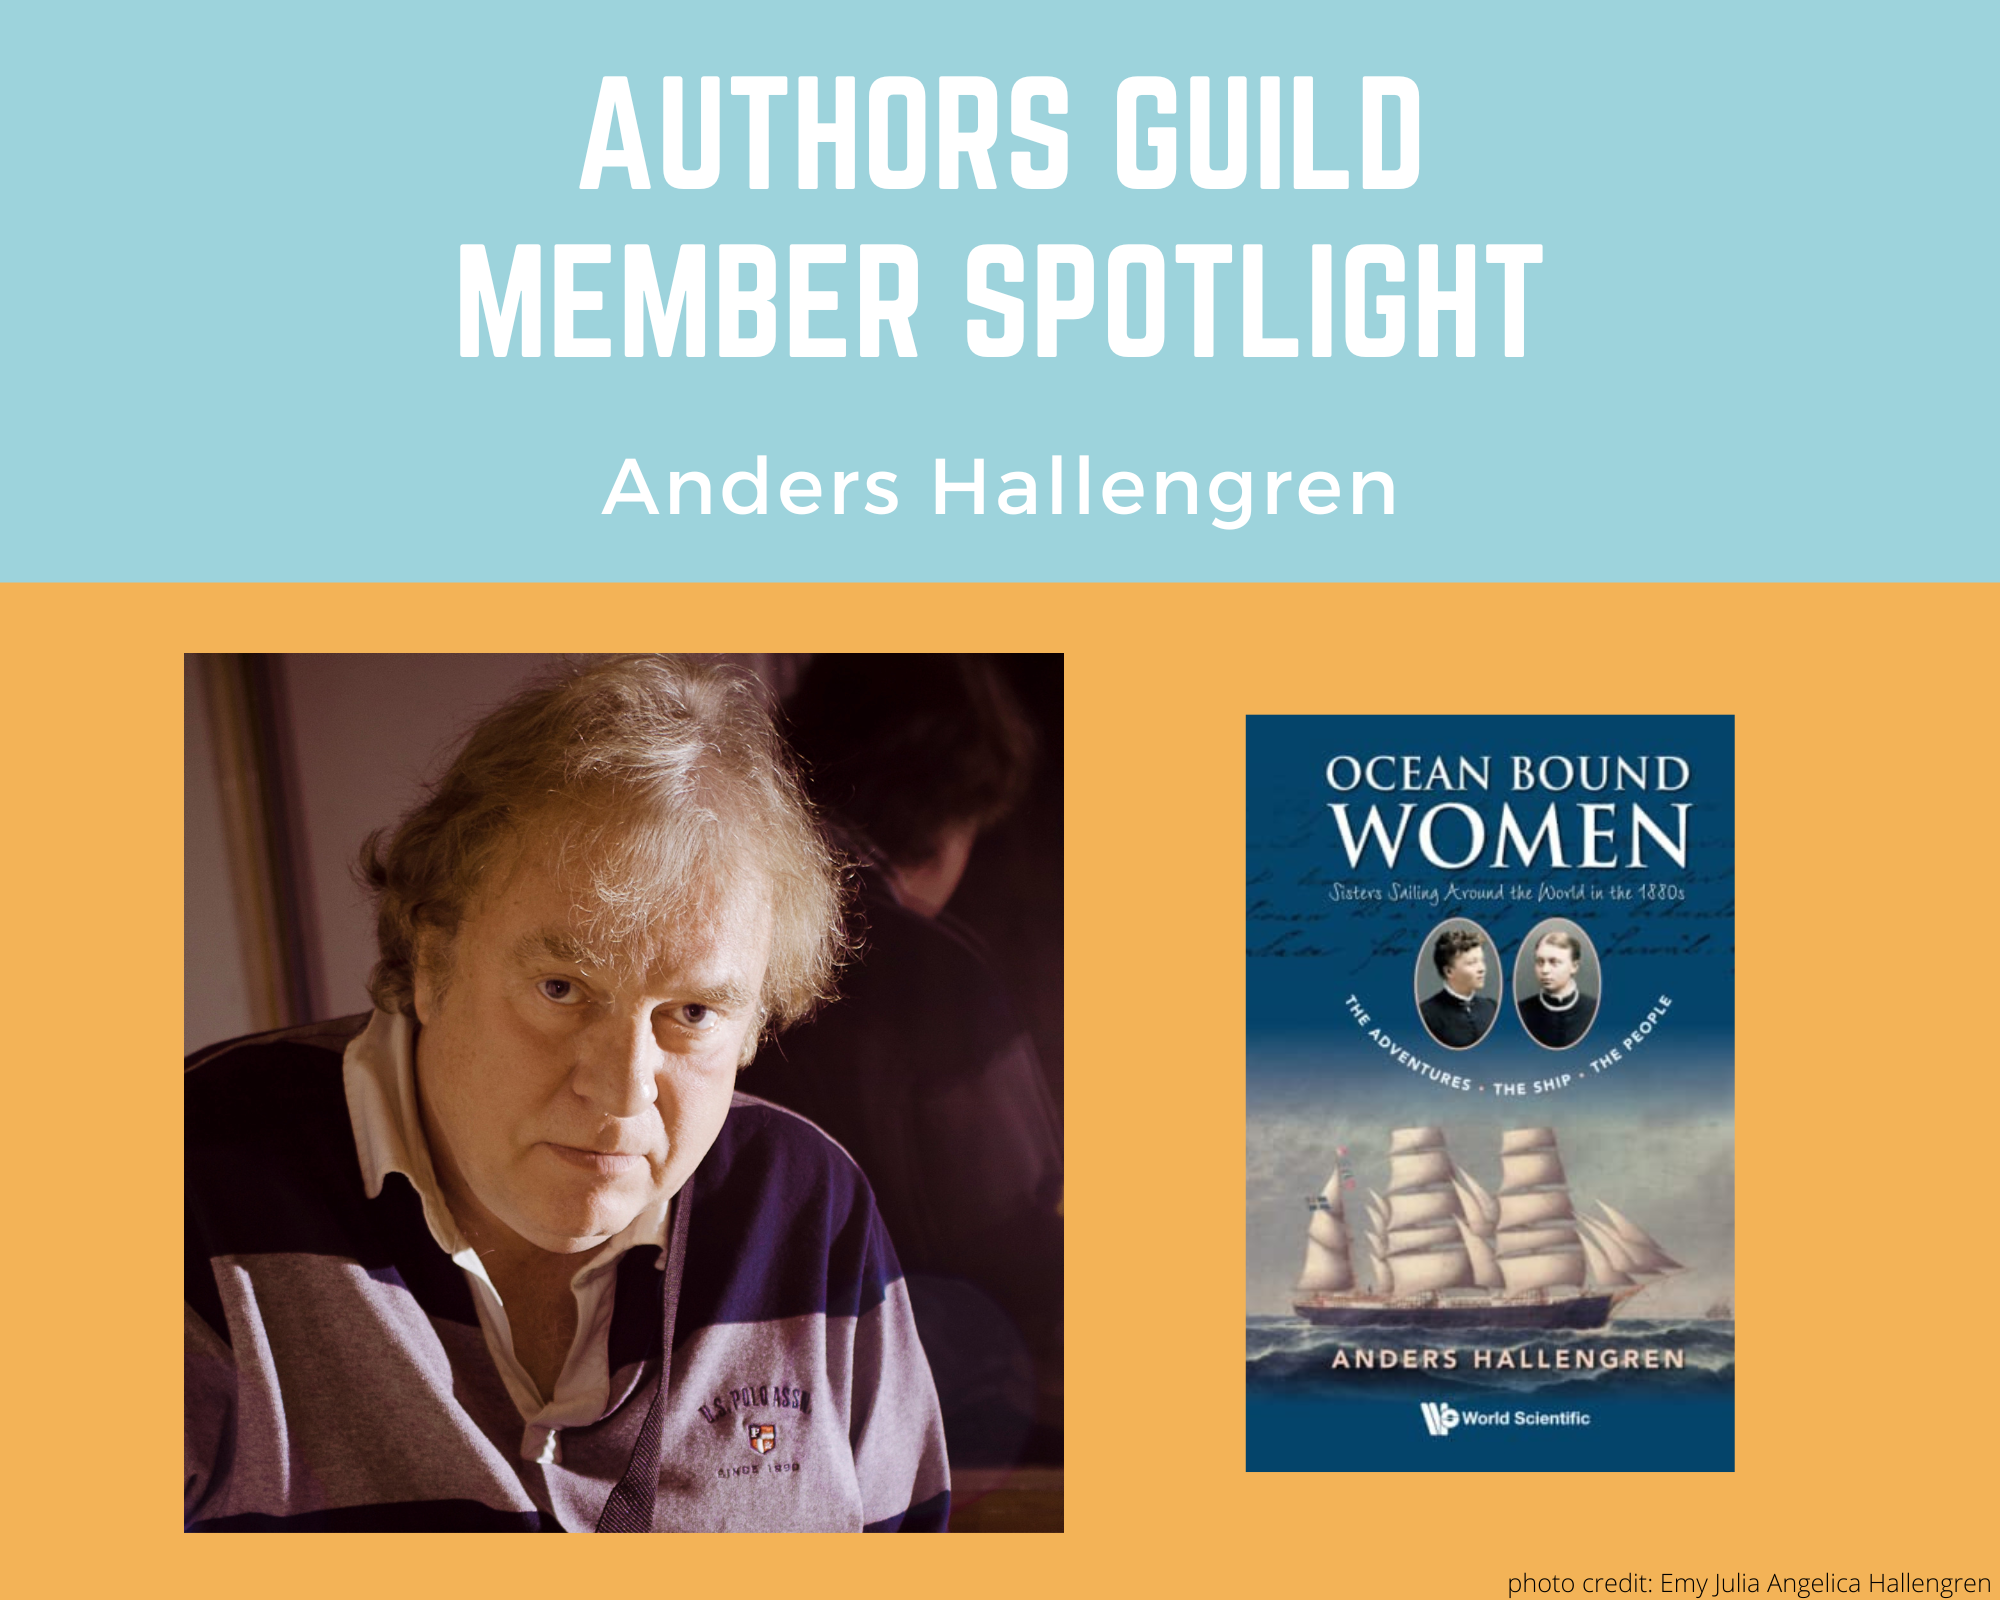 author Anders Hallengren and an image of his book Ocean Bound Women